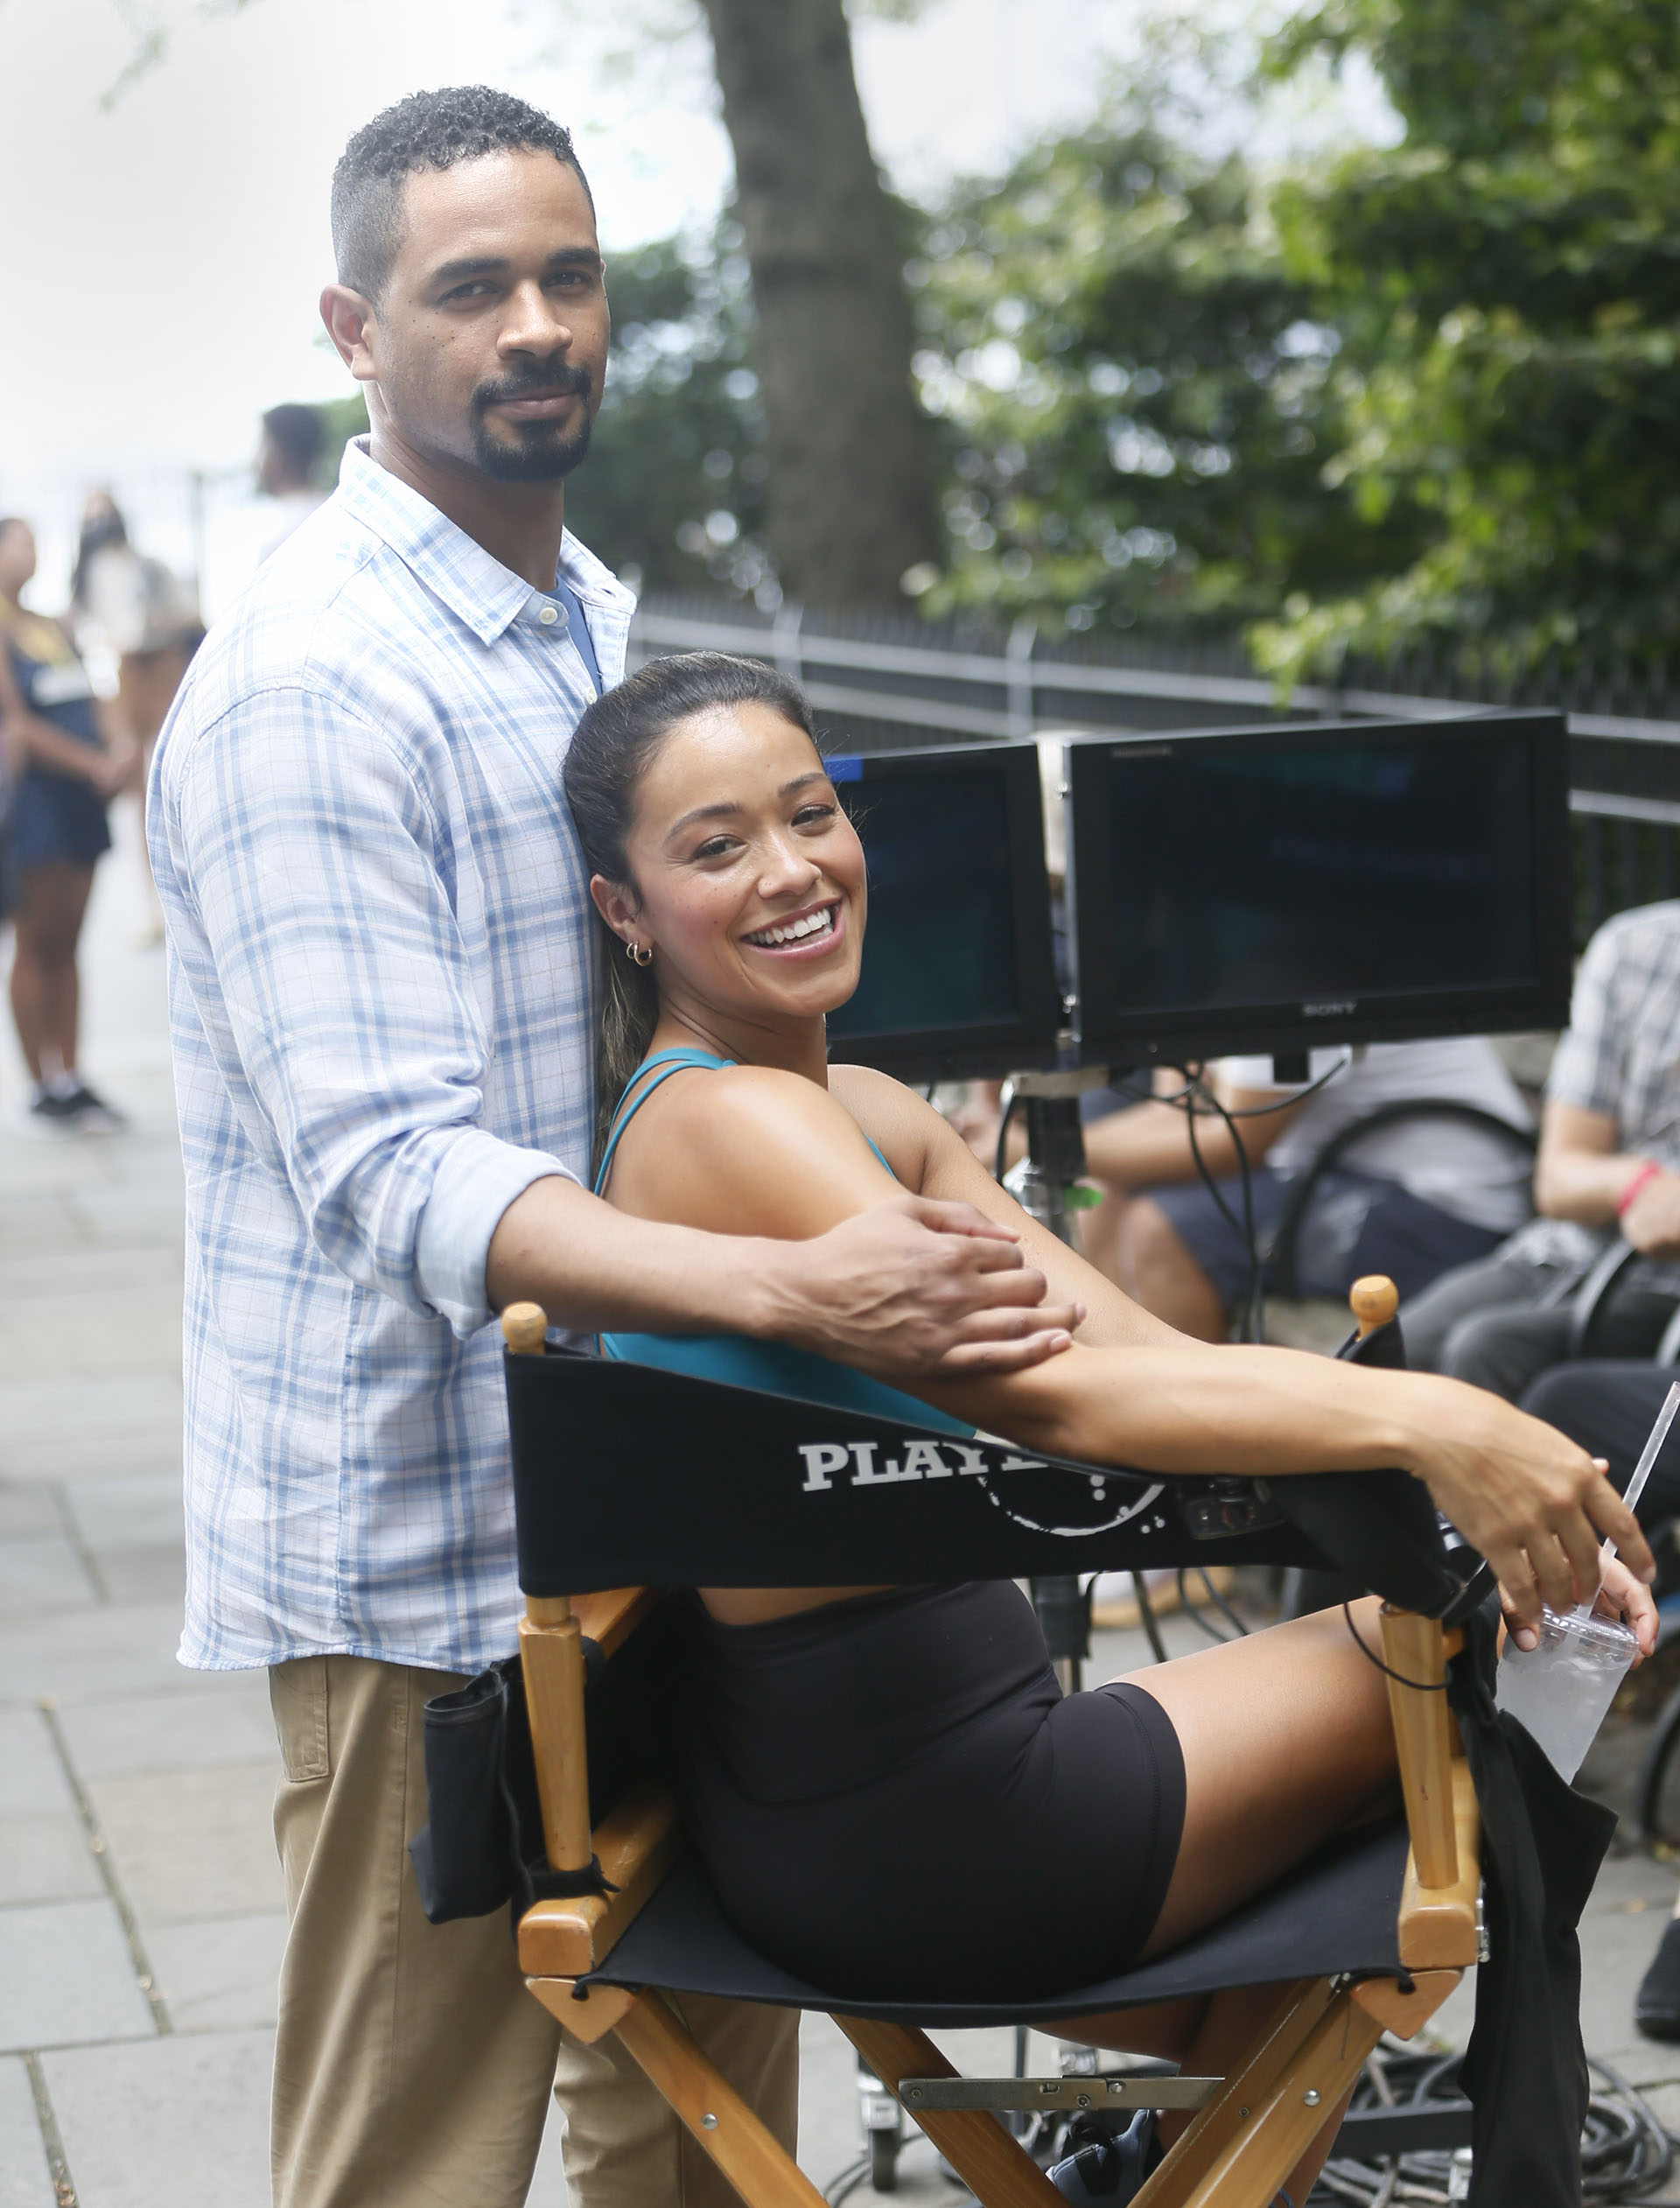 Gina Rodriguez filmó “Players” en un parque de Nueva York. Para ello, lució un conjunto deportivo de calzas cortas negras, un top azul y zapatillas grises (Fotos: The Grosby Group)